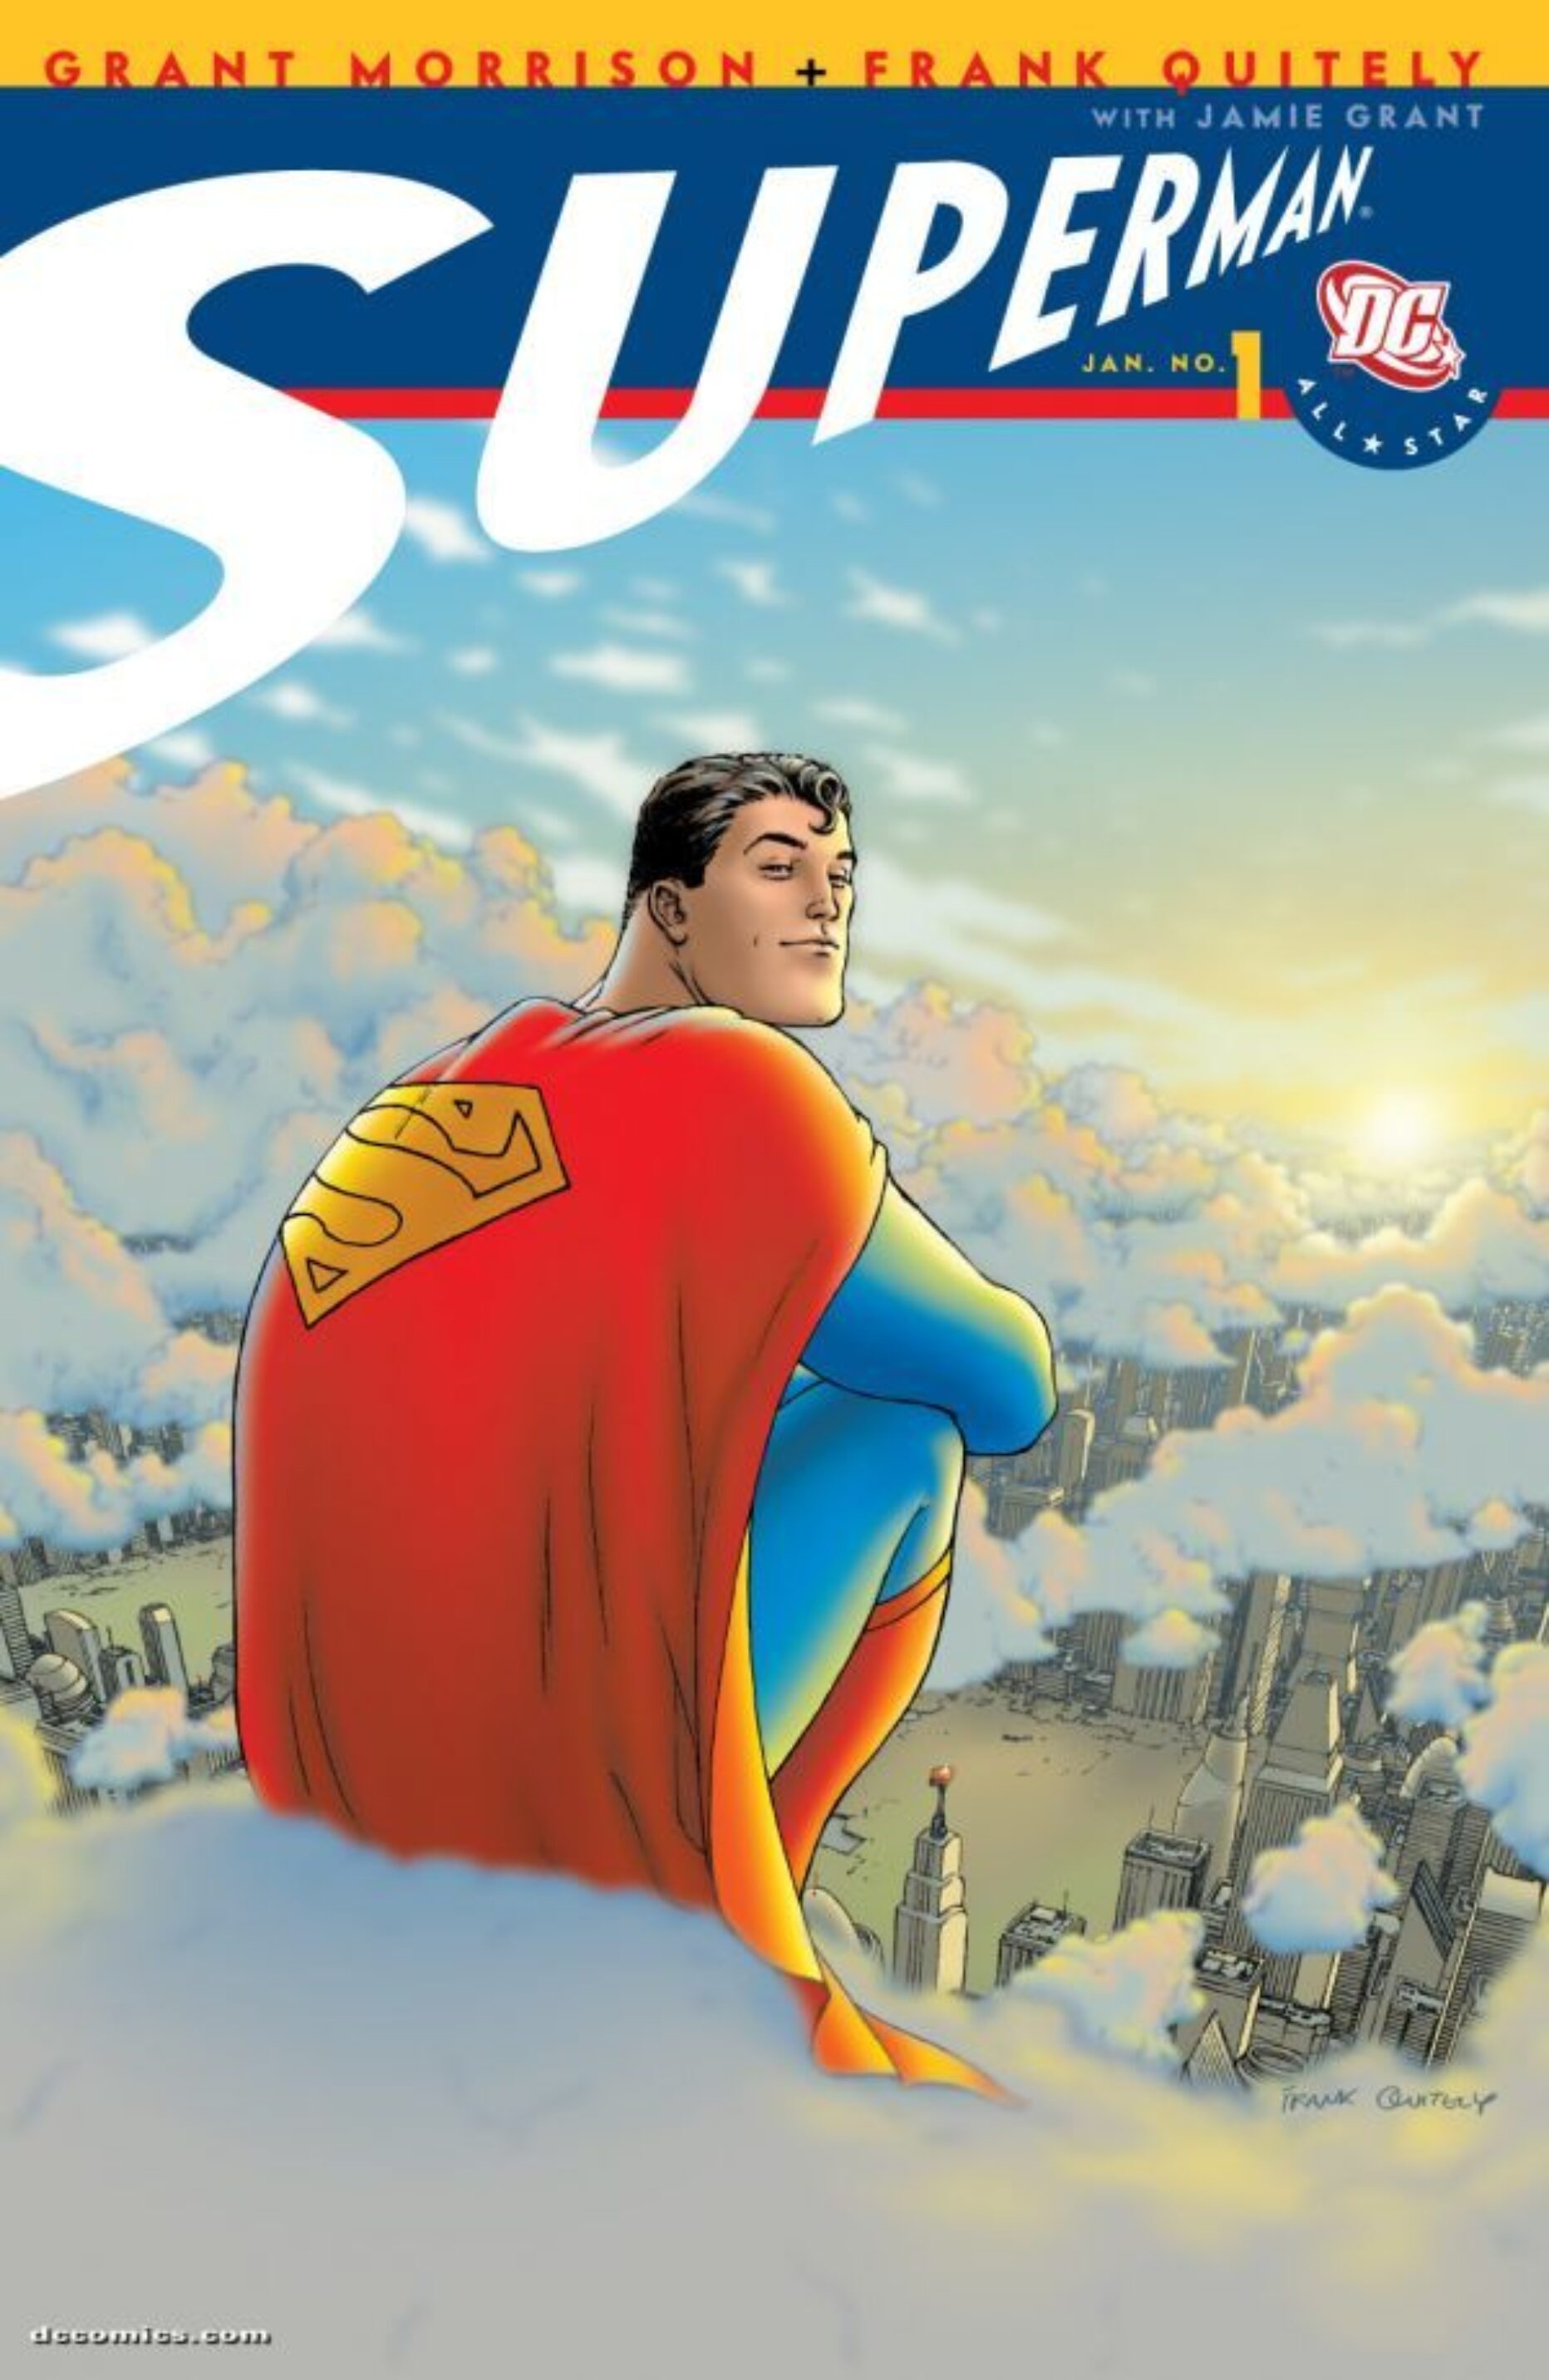 Storie a fumetti che dovreste proprio recuperare #01: All Star Superman